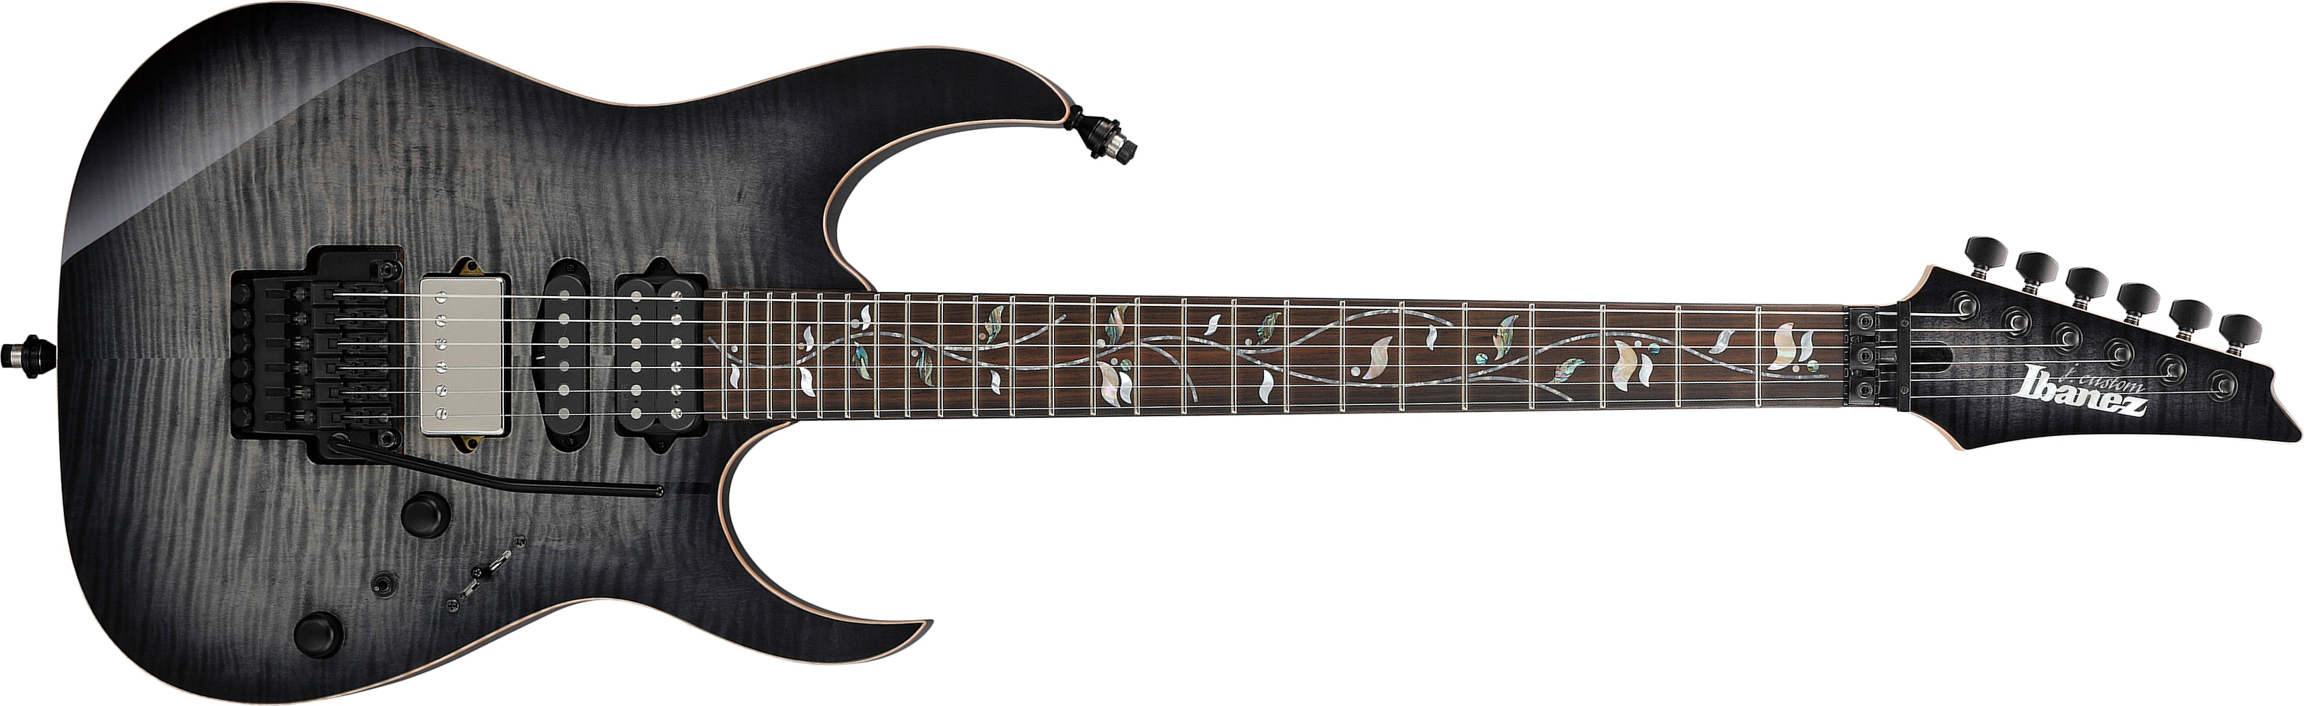 Ibanez Rg8870 Bre J.custom Jap Hsh Dimarzio Fr Eb - Black Rutile - Str shape electric guitar - Main picture